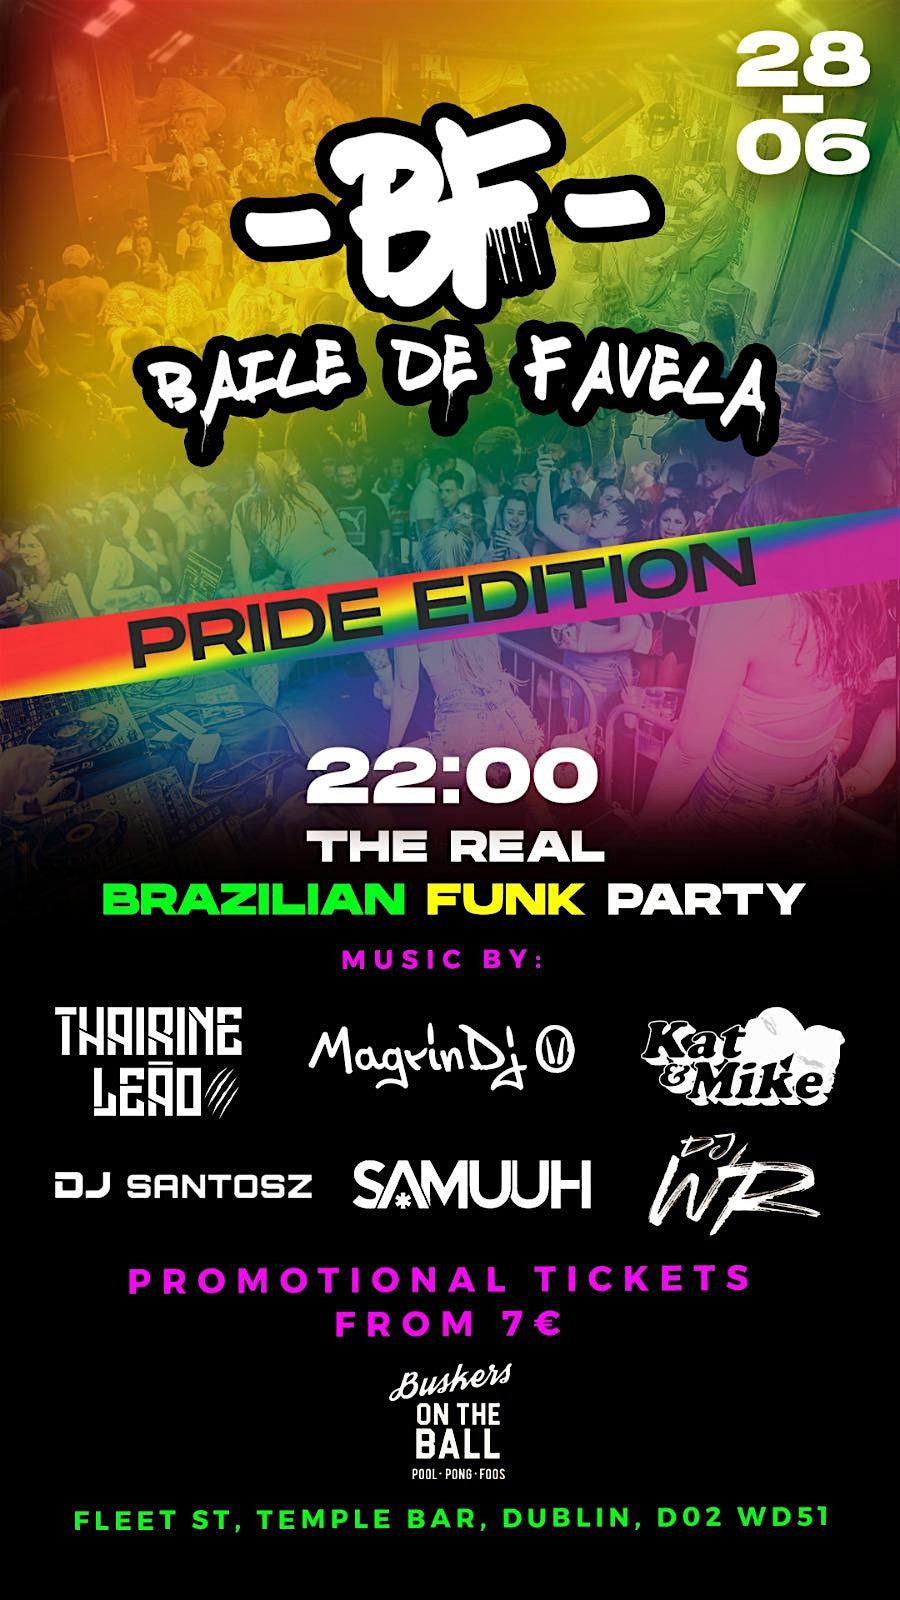 Baile de Favela - I Love Funk